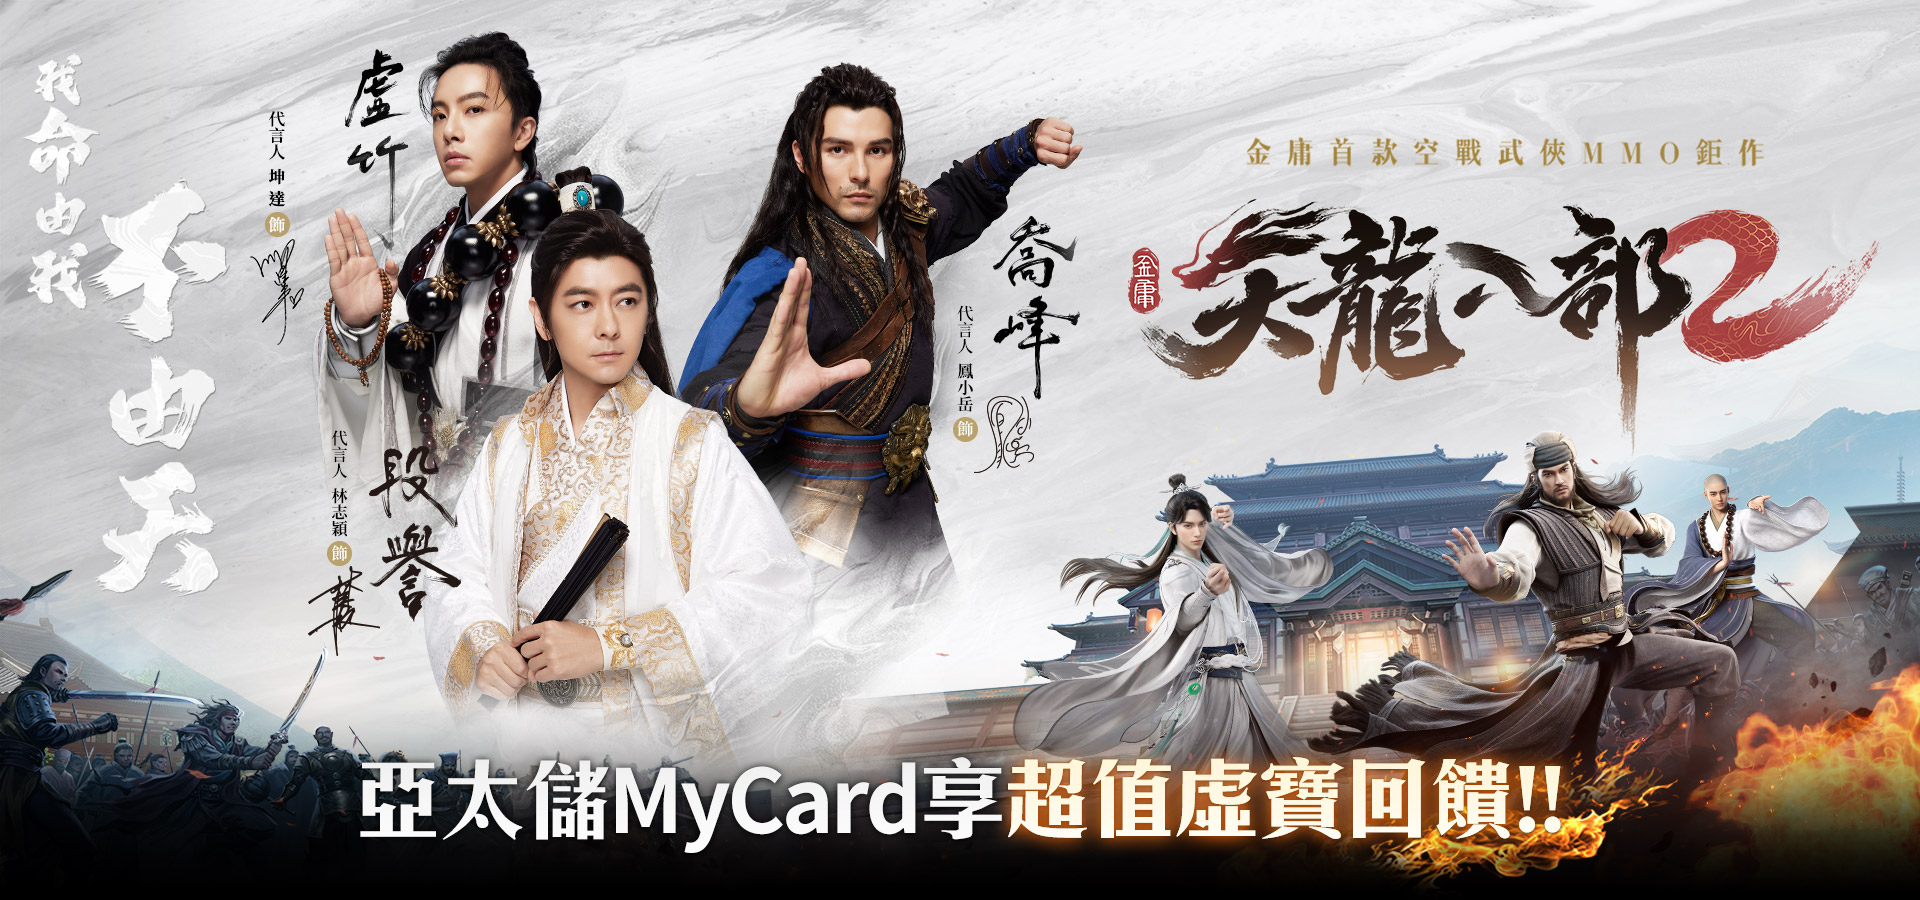   《天龍八部2》MyCard儲值享超值好禮回饋 | 亞太電信